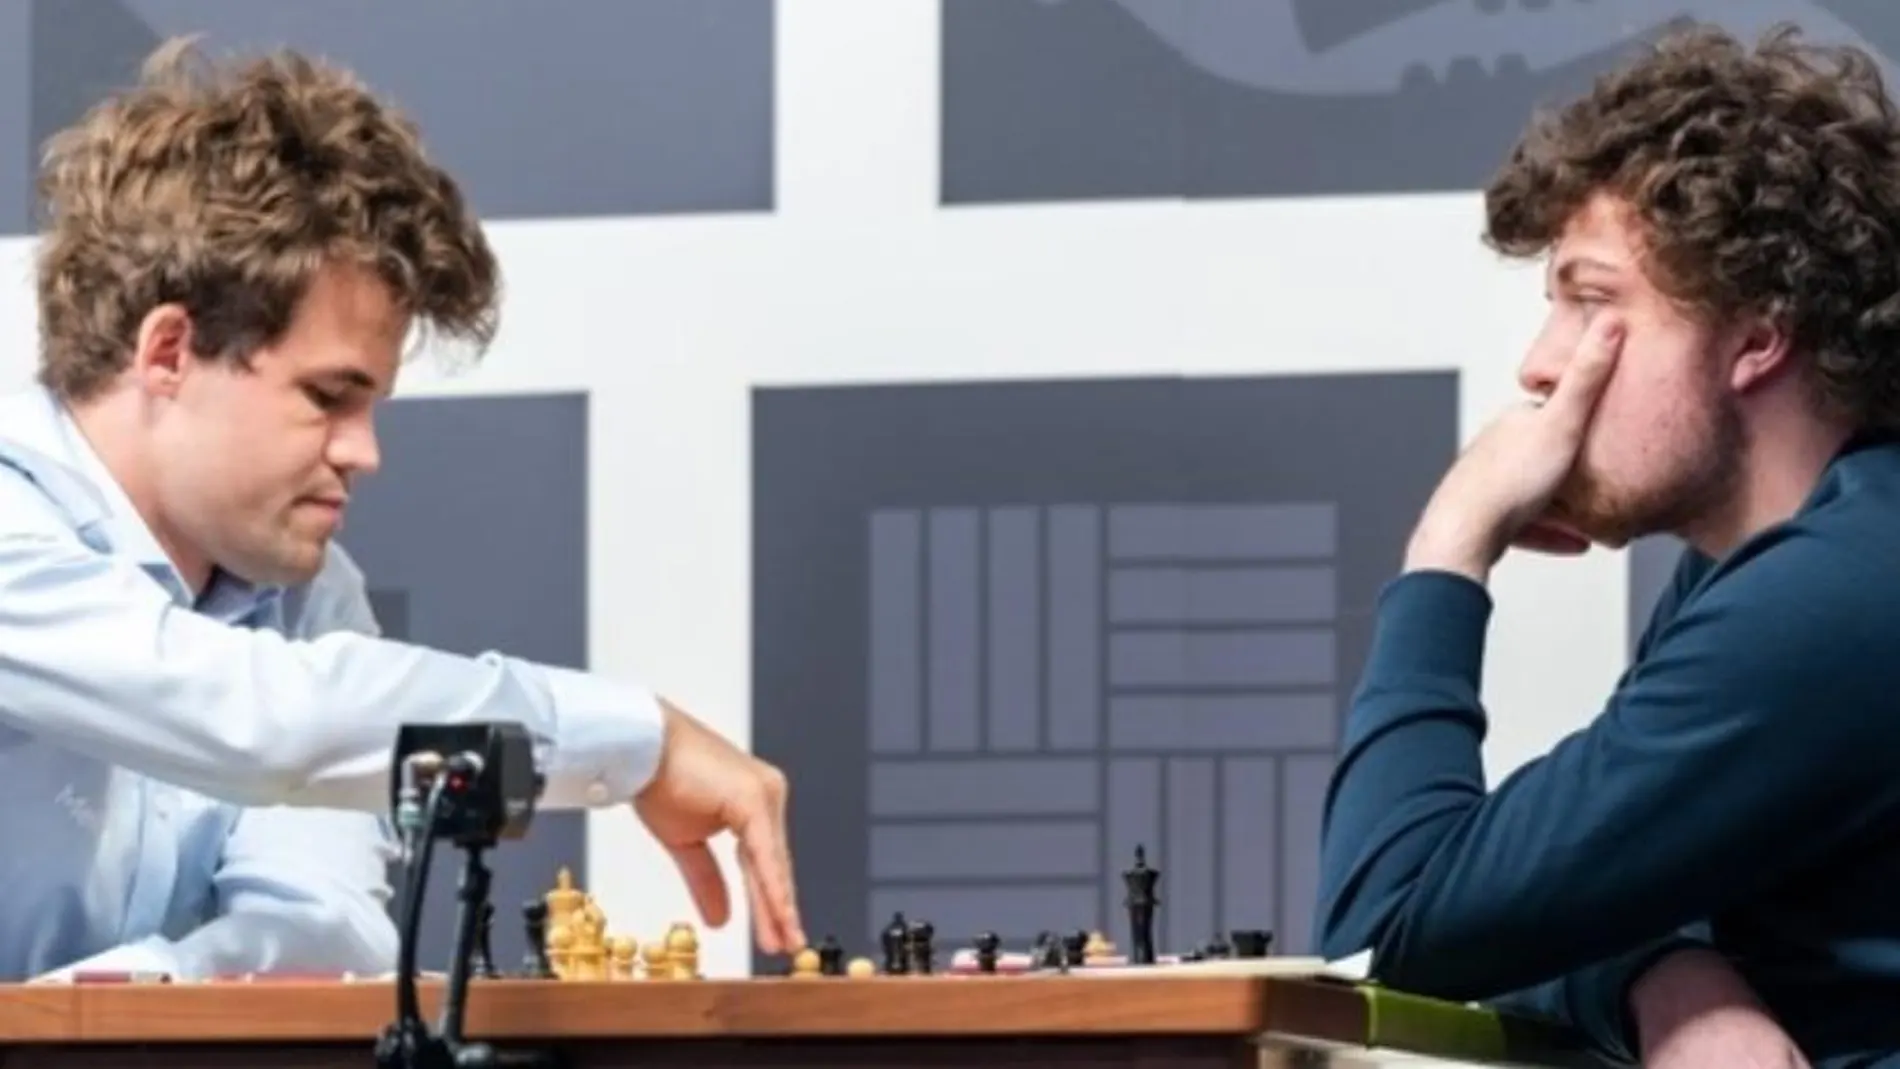 El escándalo Niemann-Carlsen sacude al ajedrez